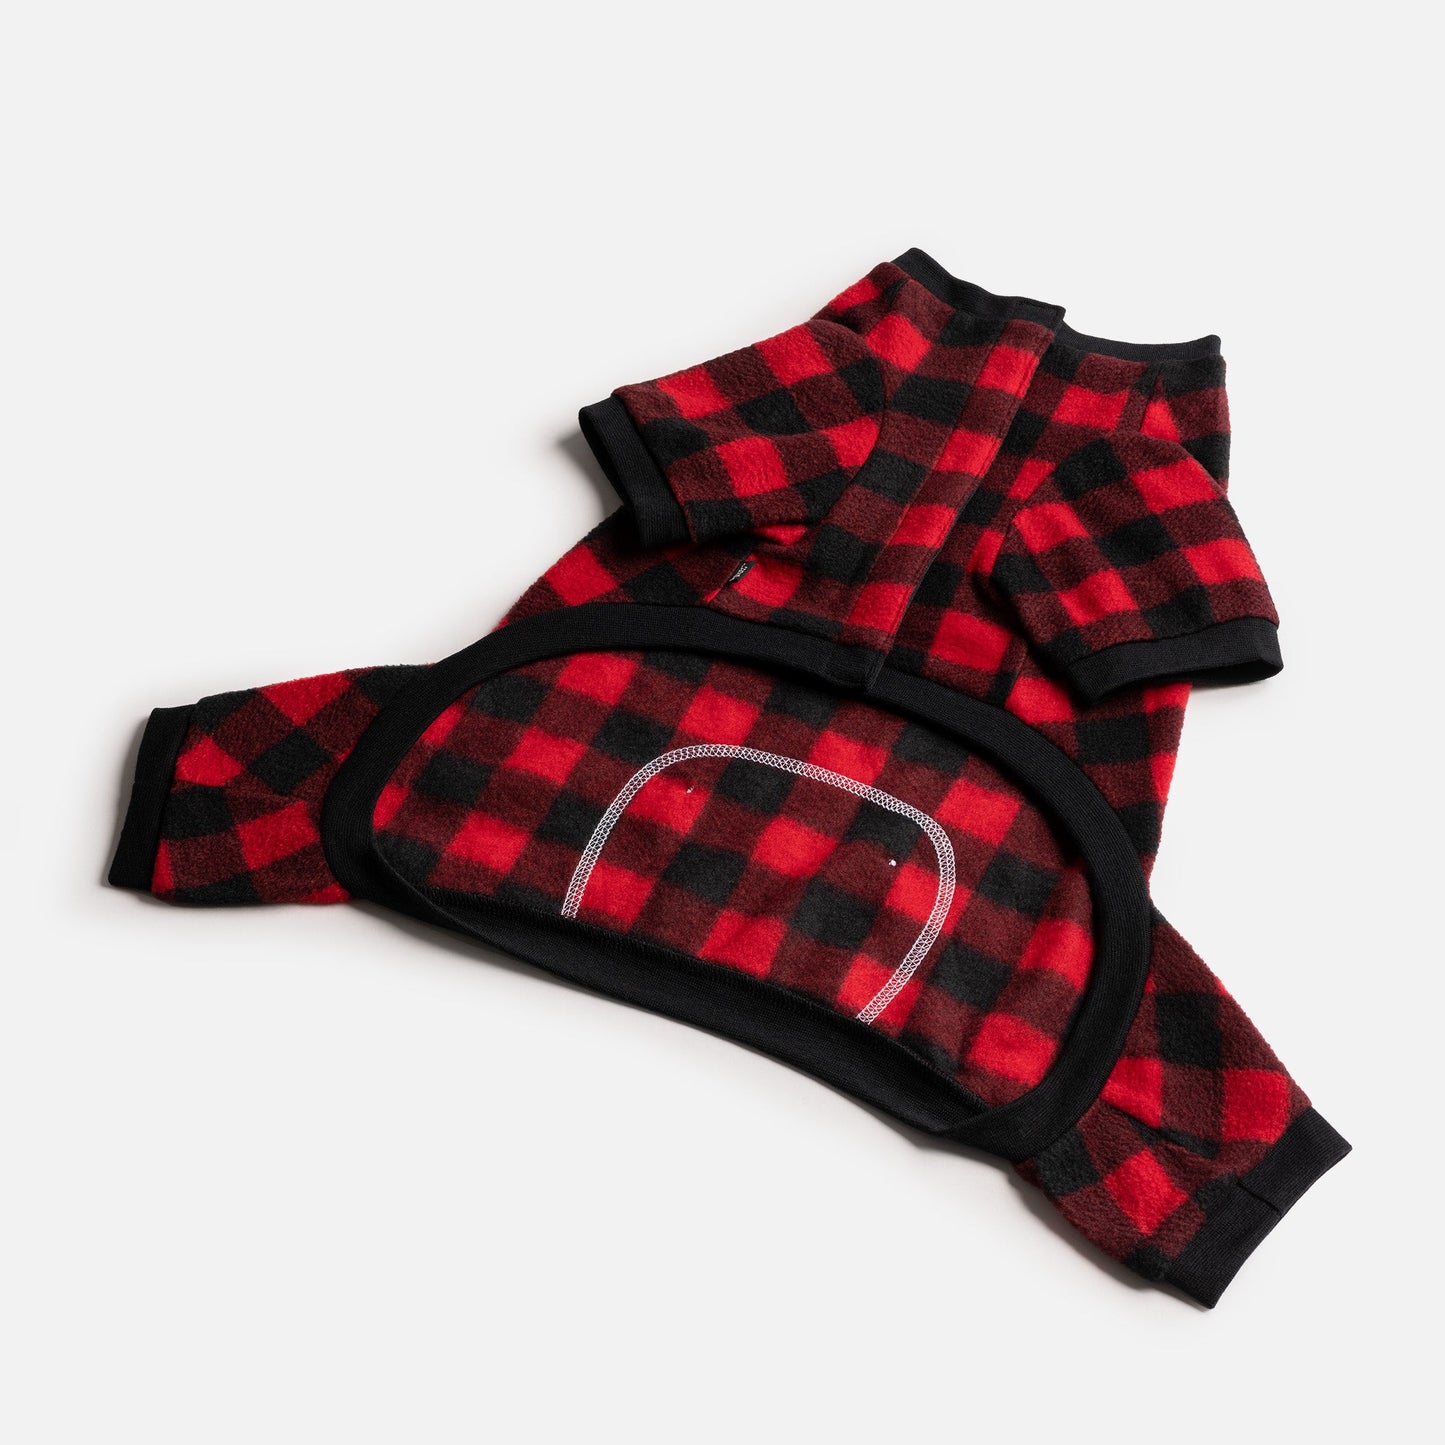 Plaid Dog Pajama - Red